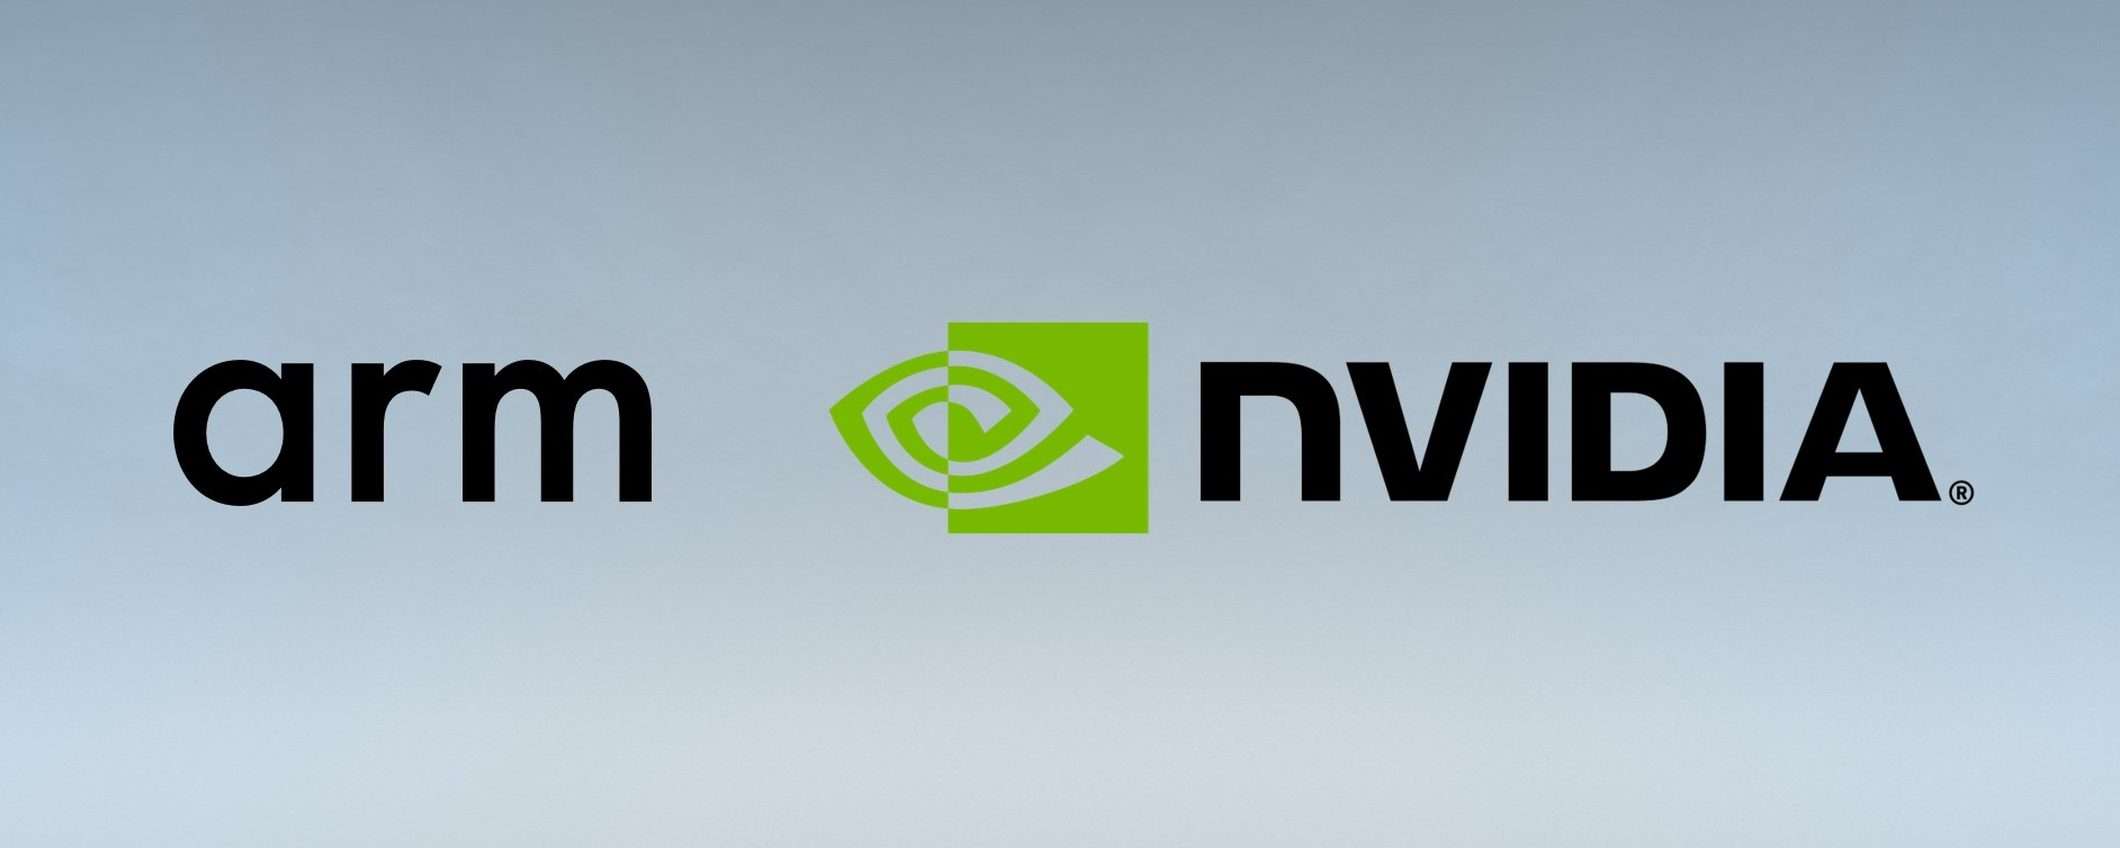 Ufficiale: NVIDIA rinuncia all'acquisizione di ARM